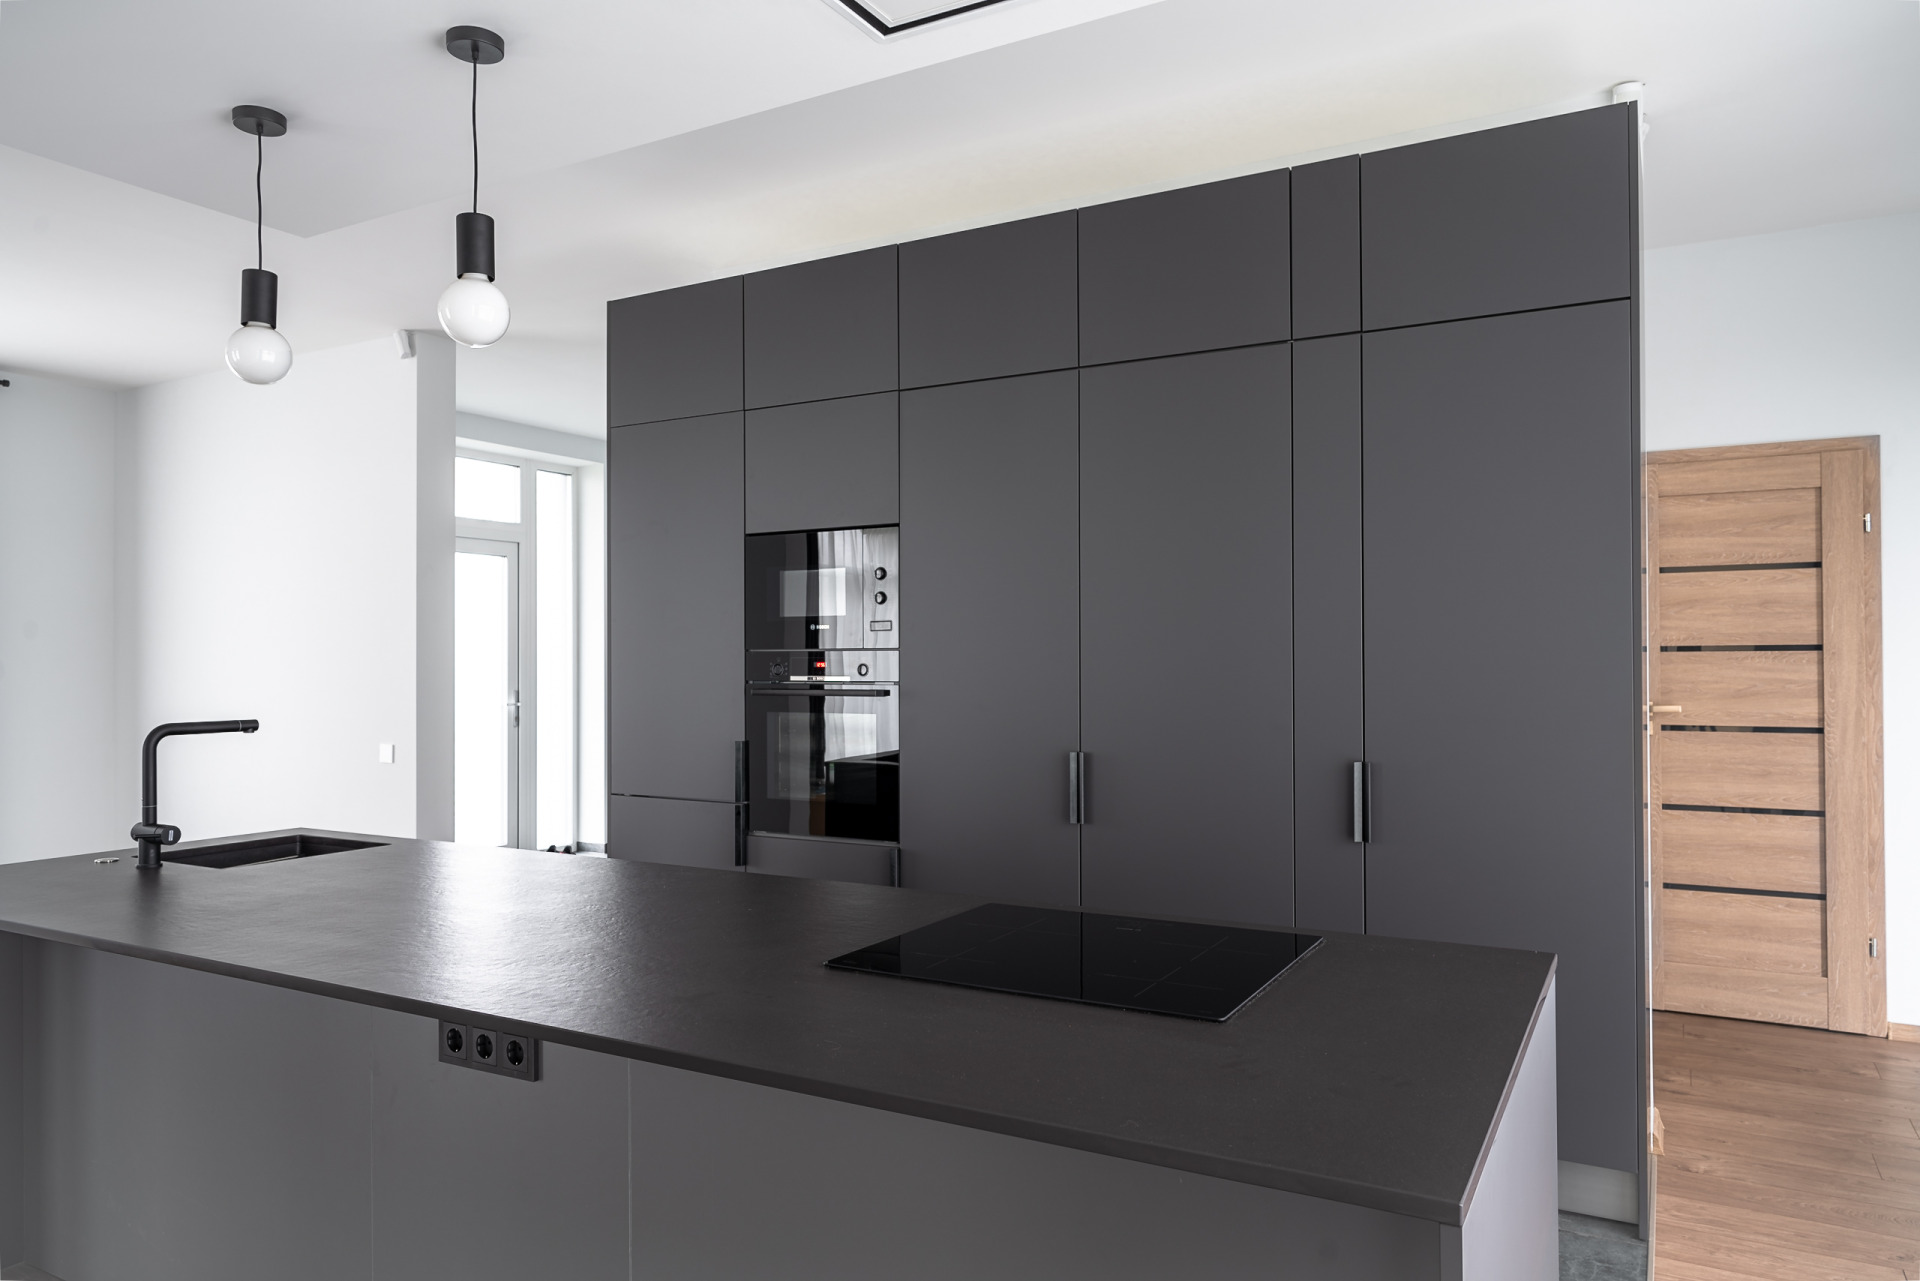 Кухонная мебель темно-серого цвета с матовыми фасадами и каменной поверхностью